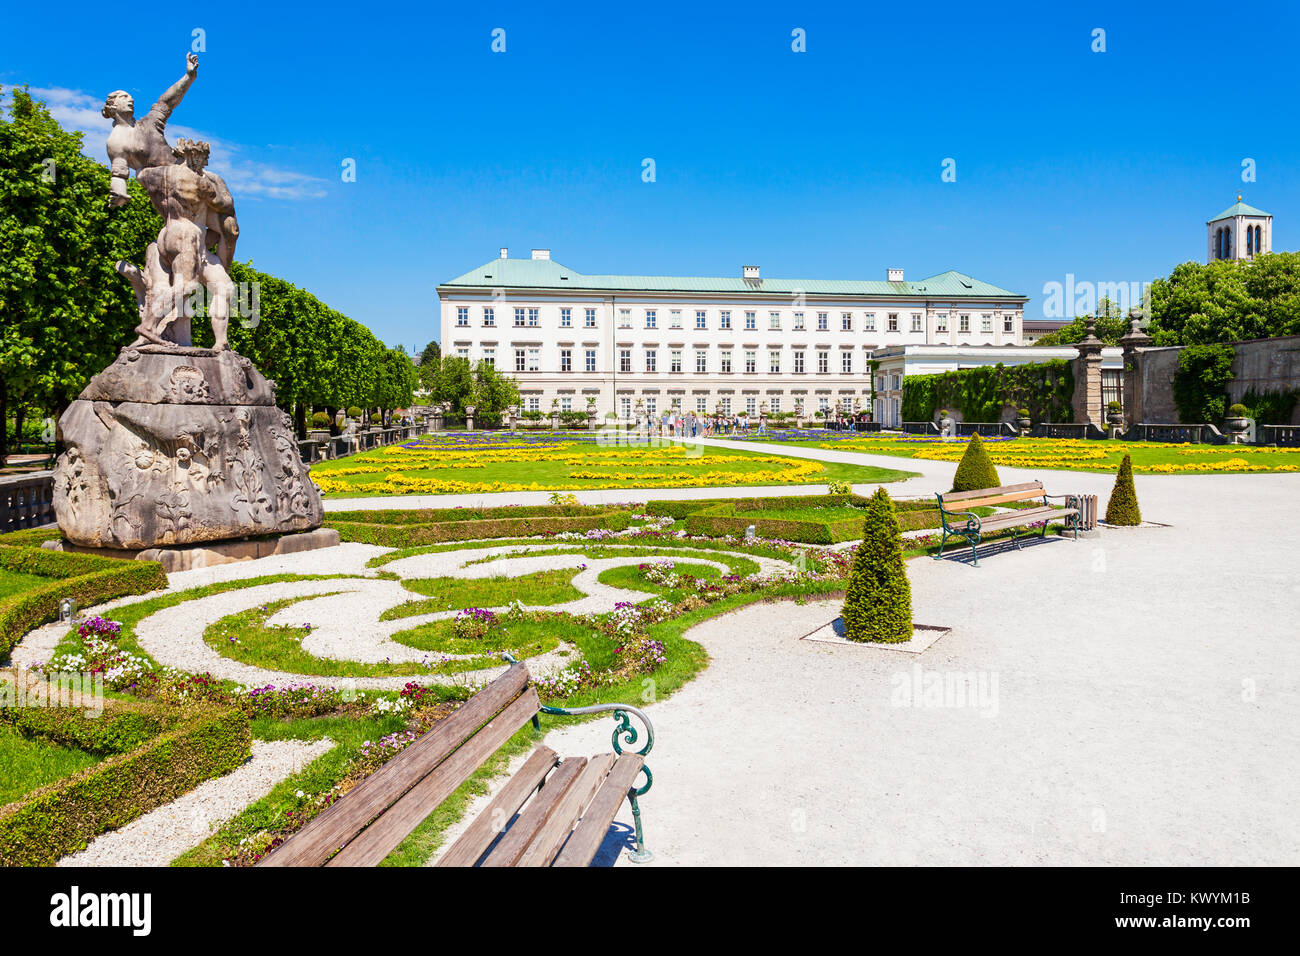 Schloss Mirabell oder Schloss Mirabell ist ein historisches Gebäude in der Stadt Salzburg, Österreich. Schloss Mirabell mit seinen Gärten ist ein UNESCO Weltkulturerbe S Stockfoto